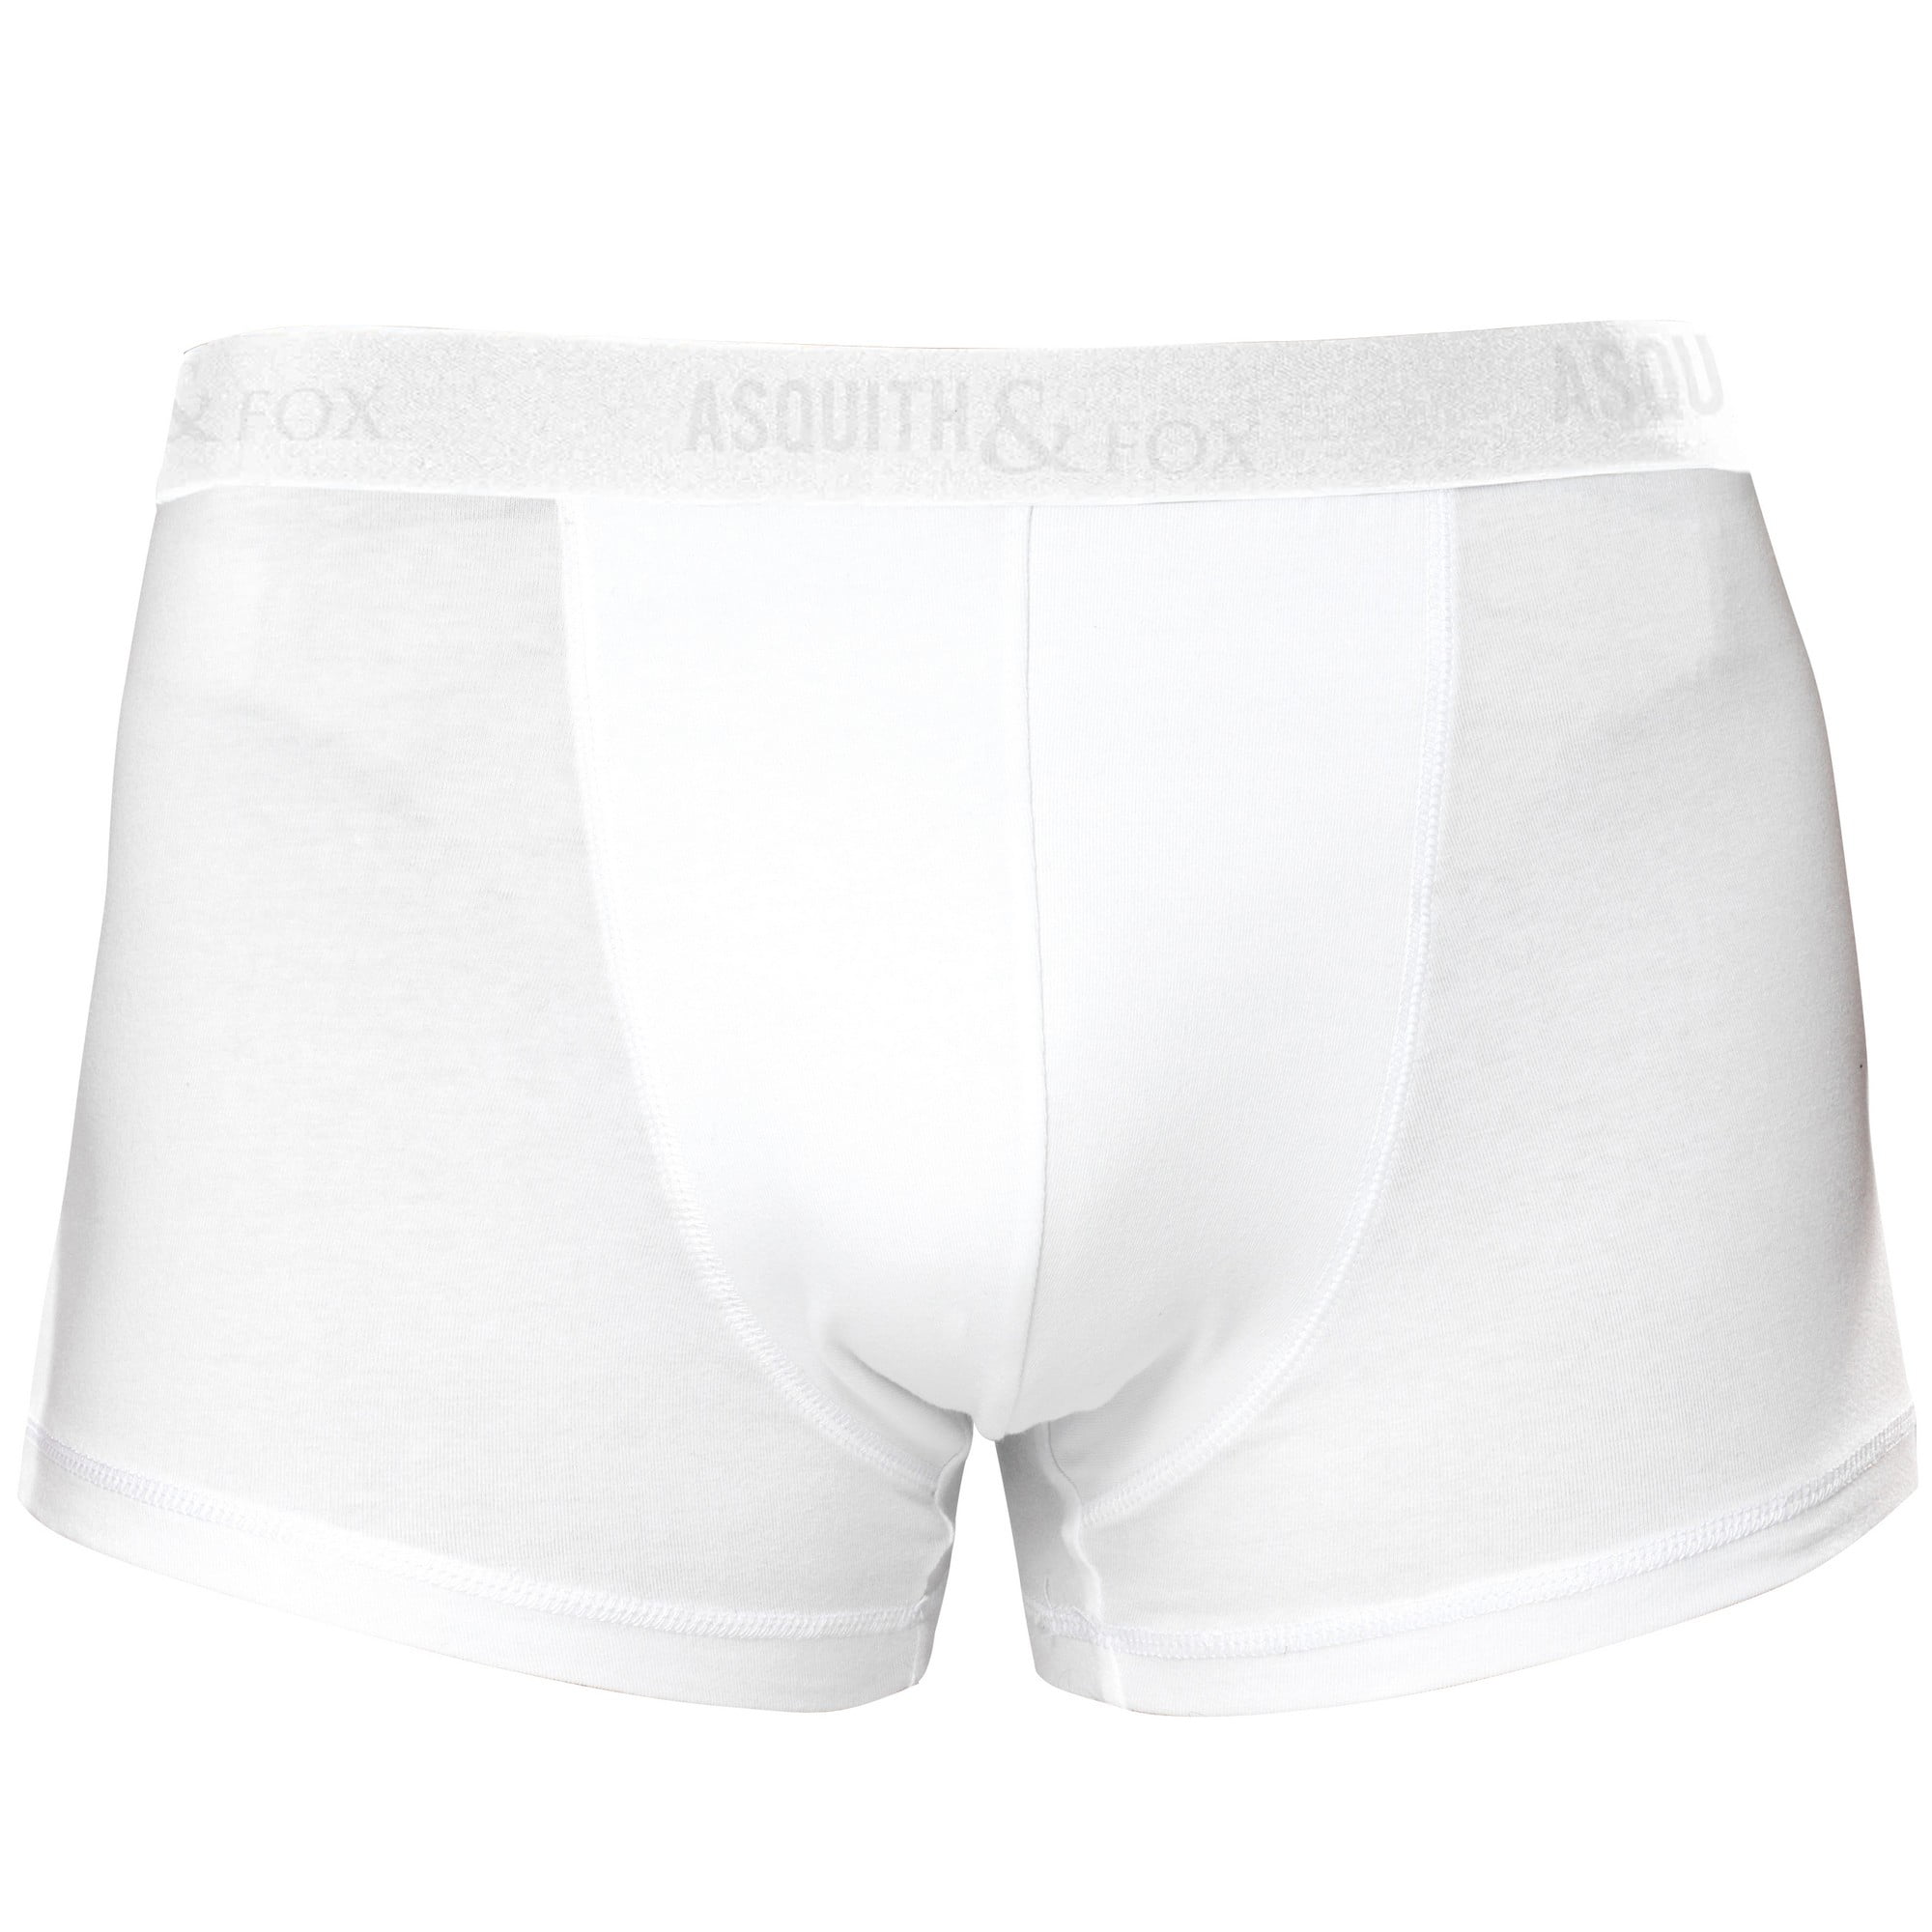 New Mens 3,12 Pairs Y Fronts Underwear Briefs 100% Cotton Interlock Size S-2XL 